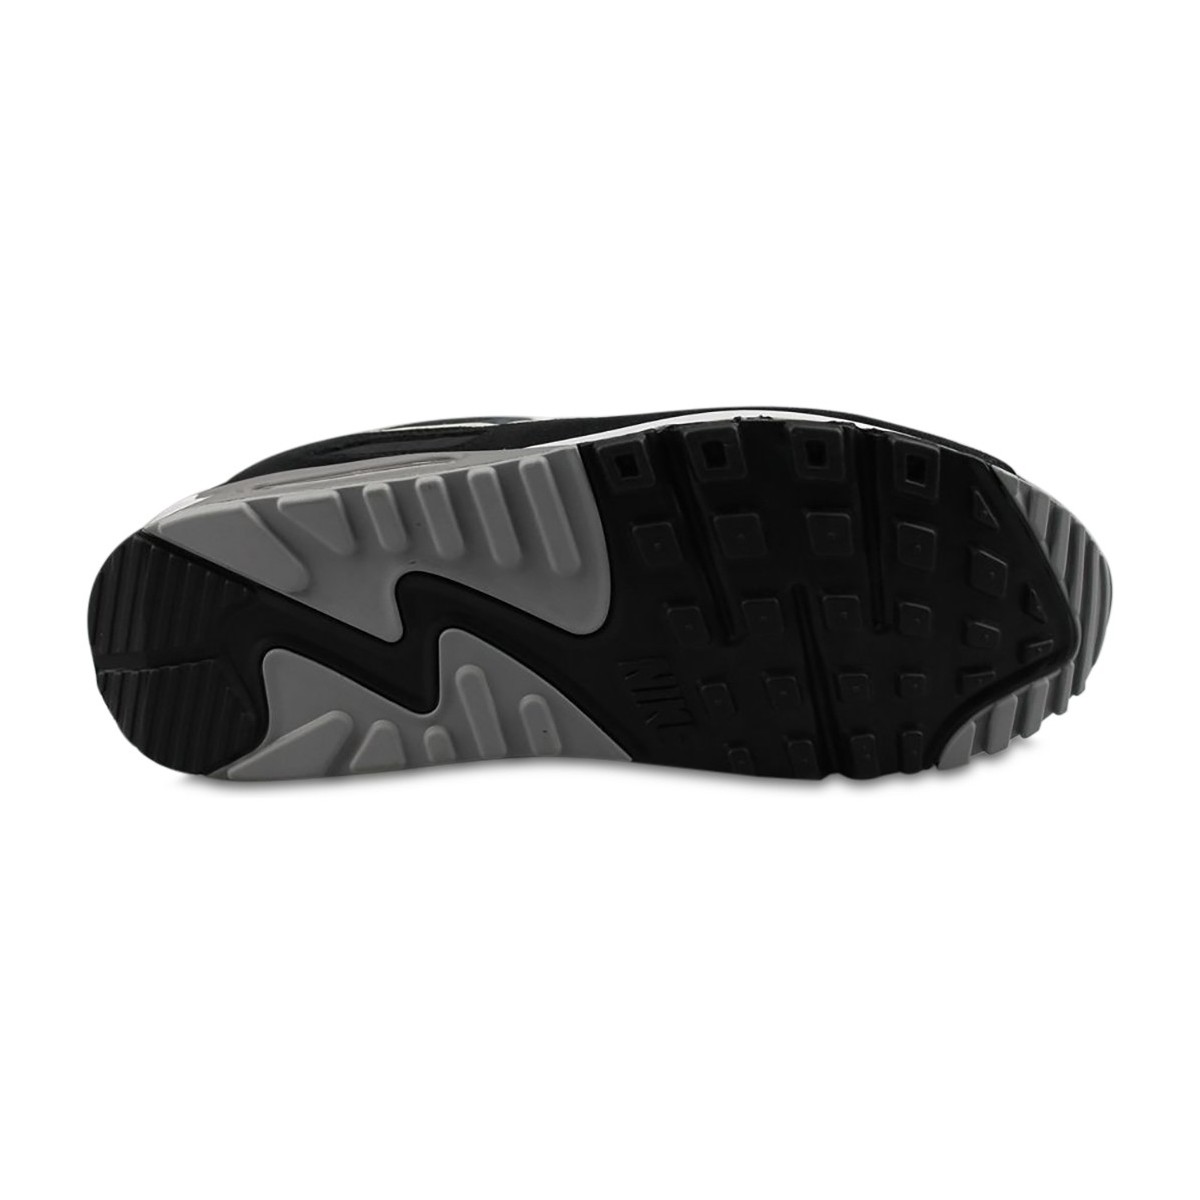 Nike Noir Air Max 90 Premium Off Noir Da1641-003 sPJHUl2C